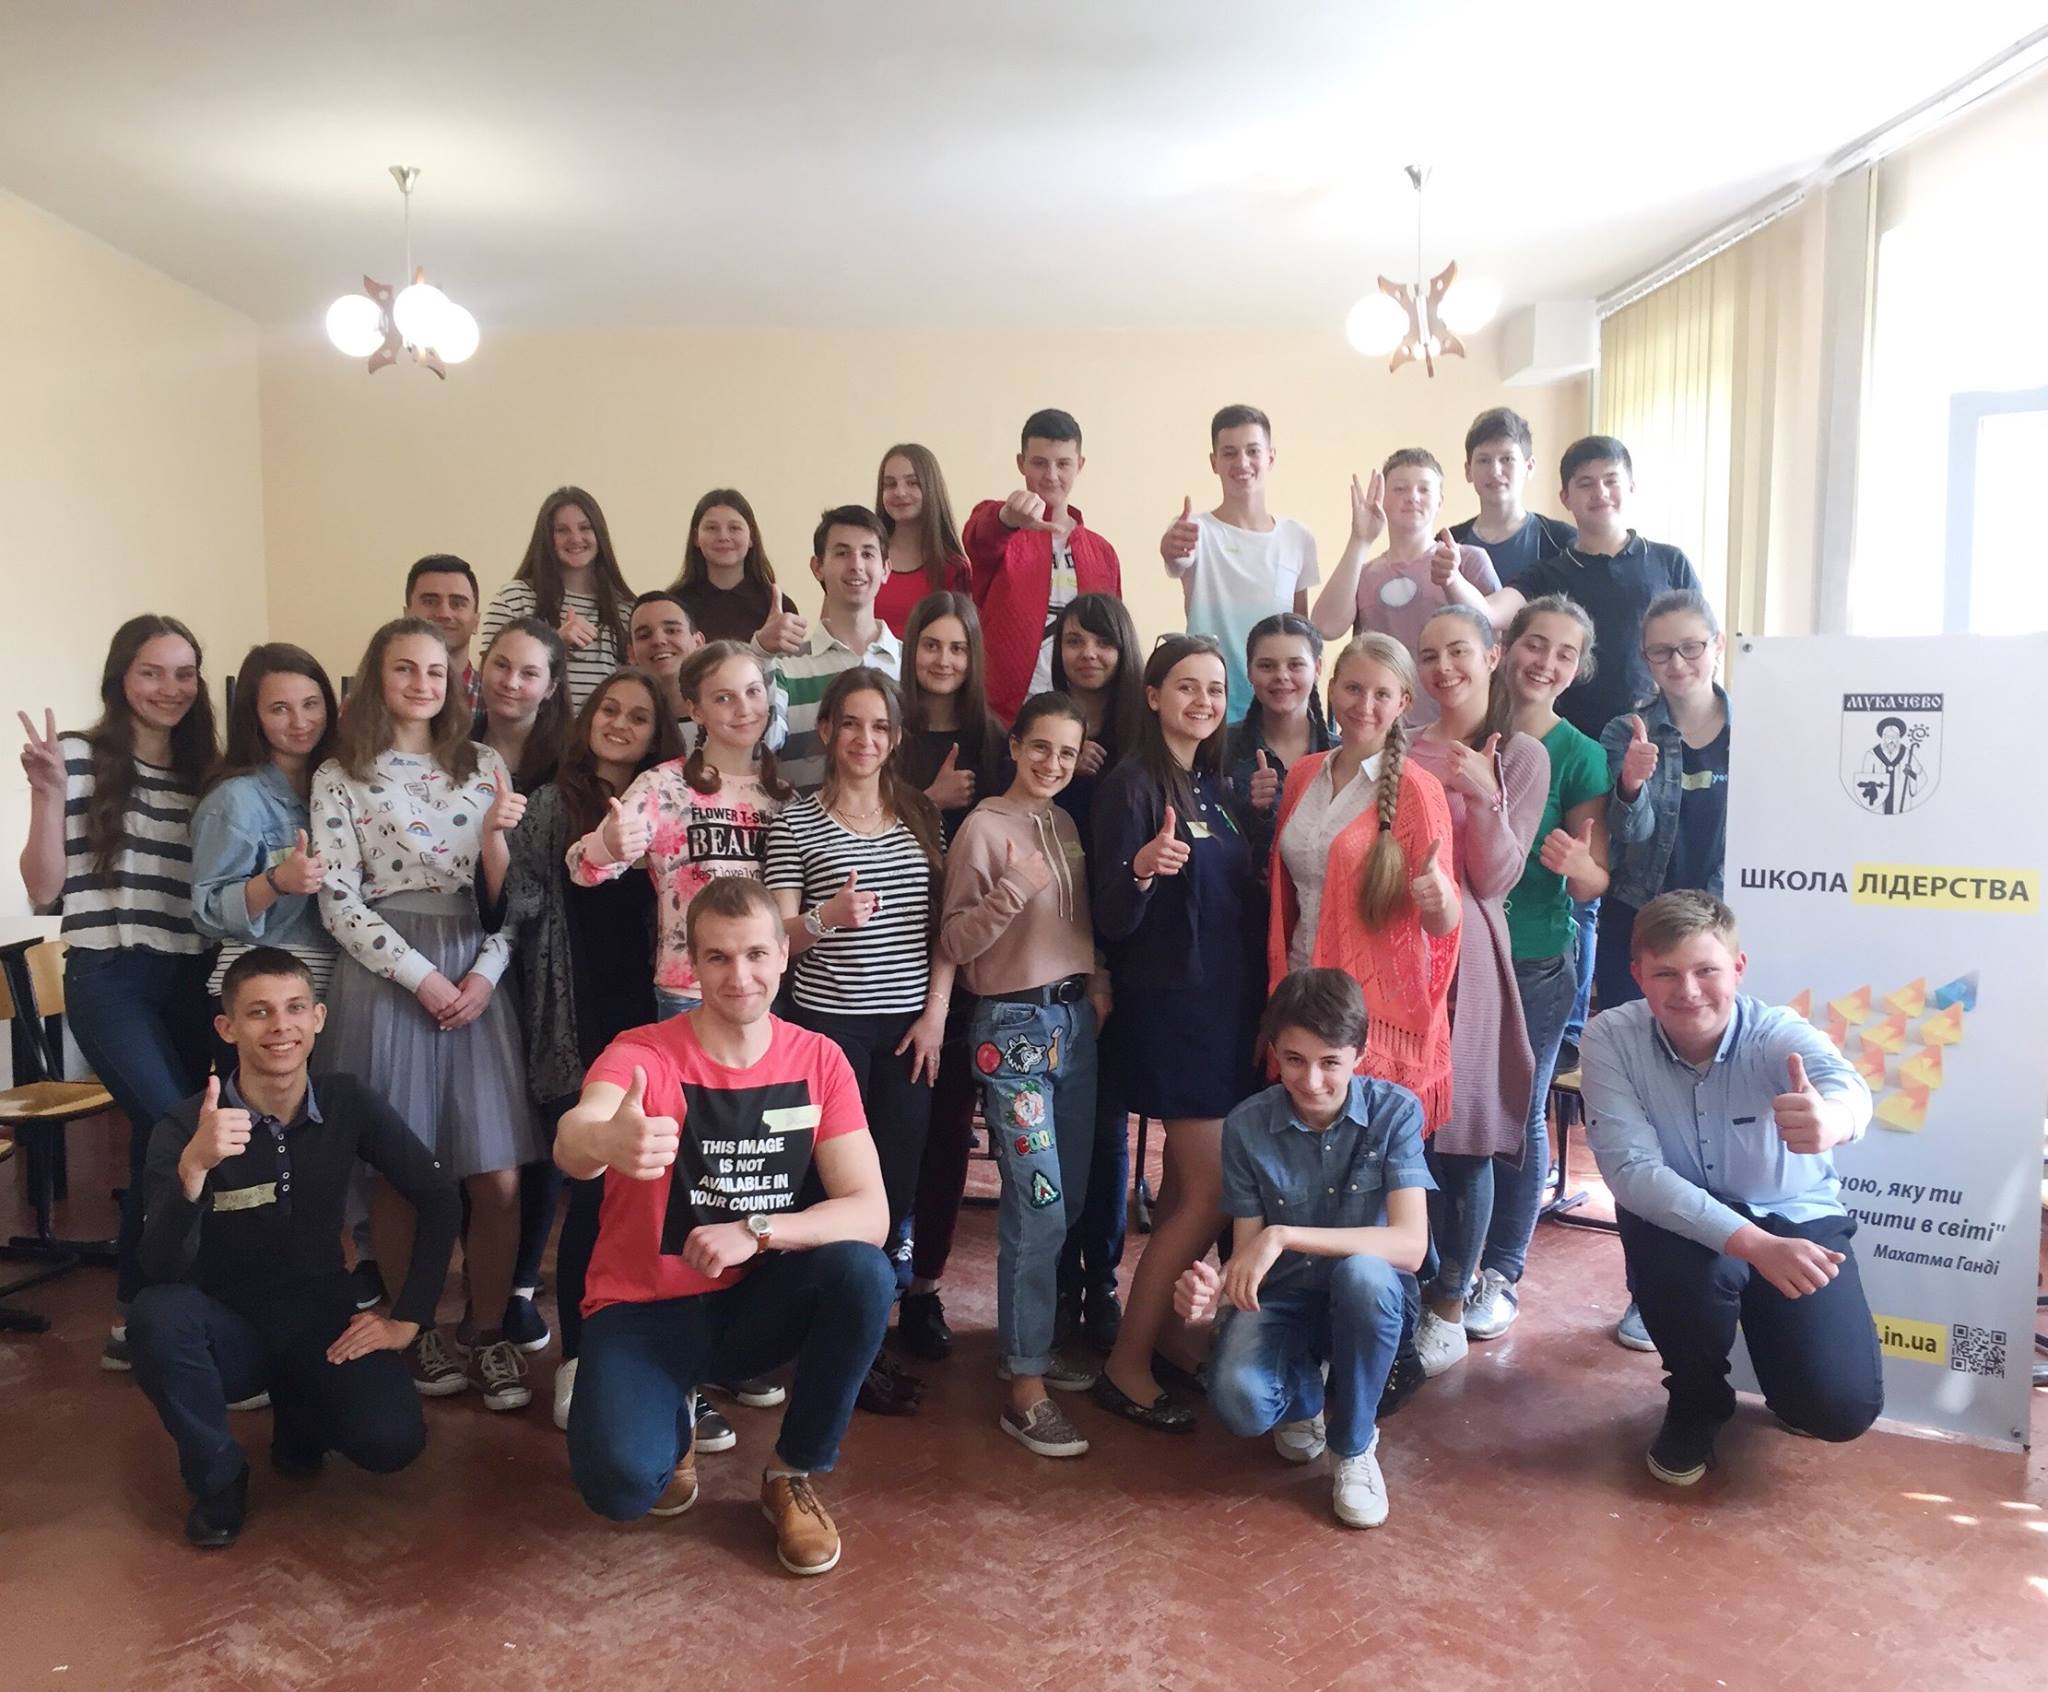 Участники школы Лидерства приняли участие в тренинге по правам человека, который состоялся в эти выходные в Мукачево. 